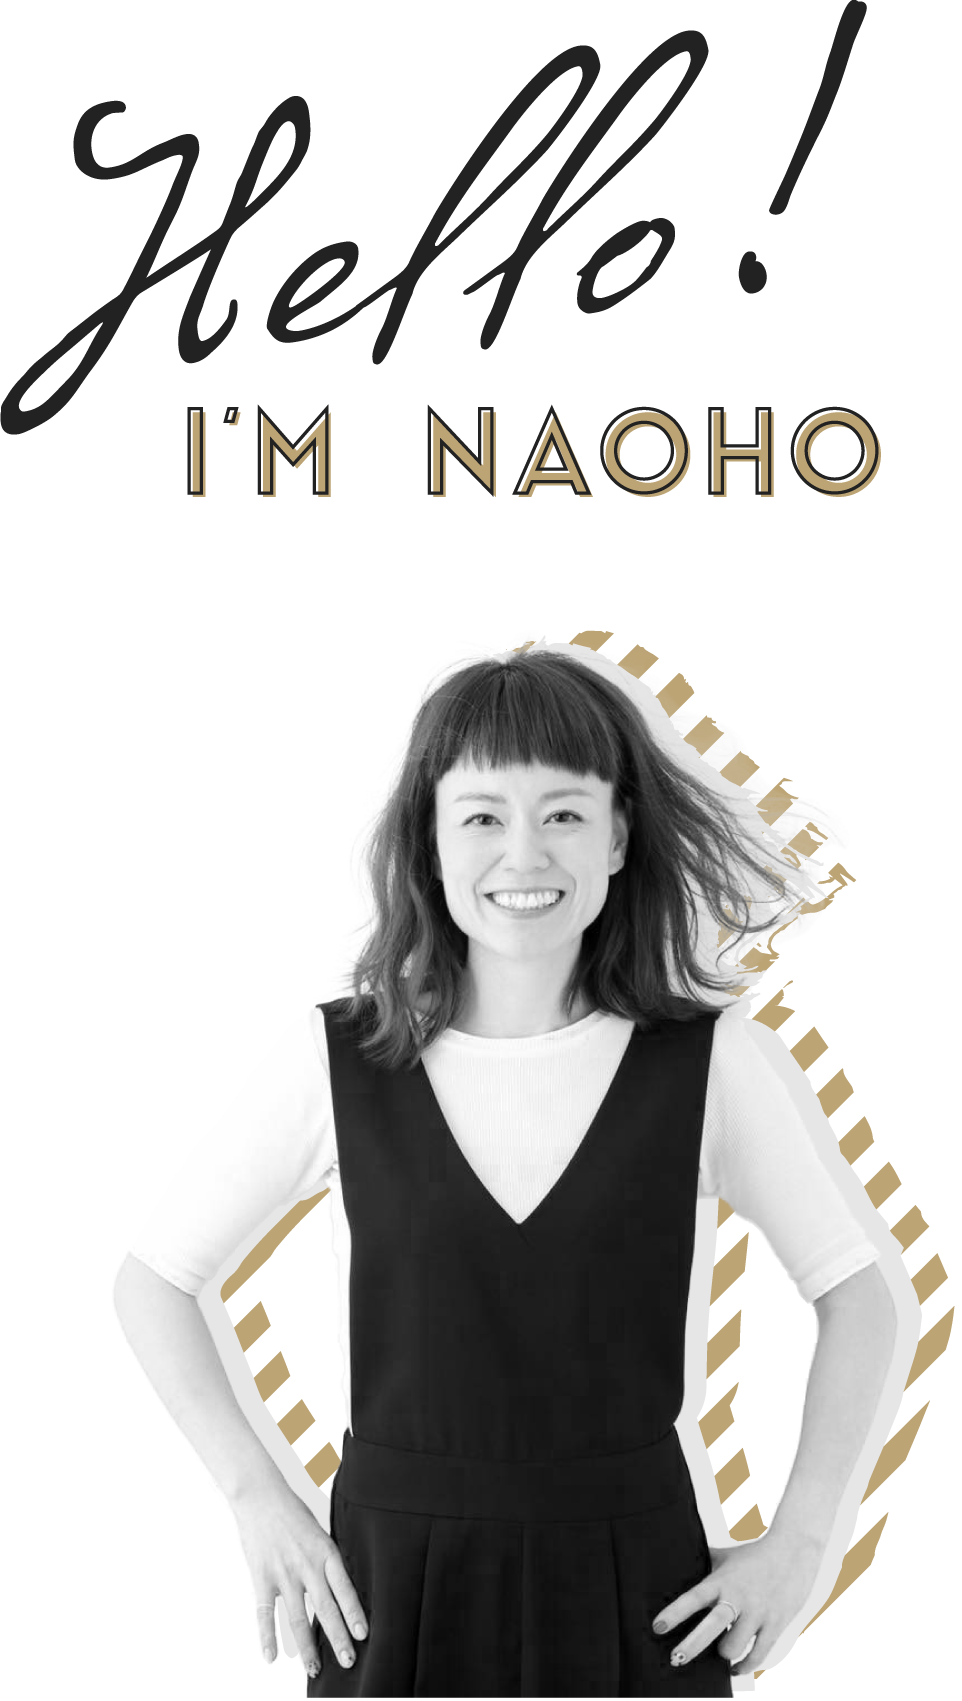 Hello! I'm Naoho